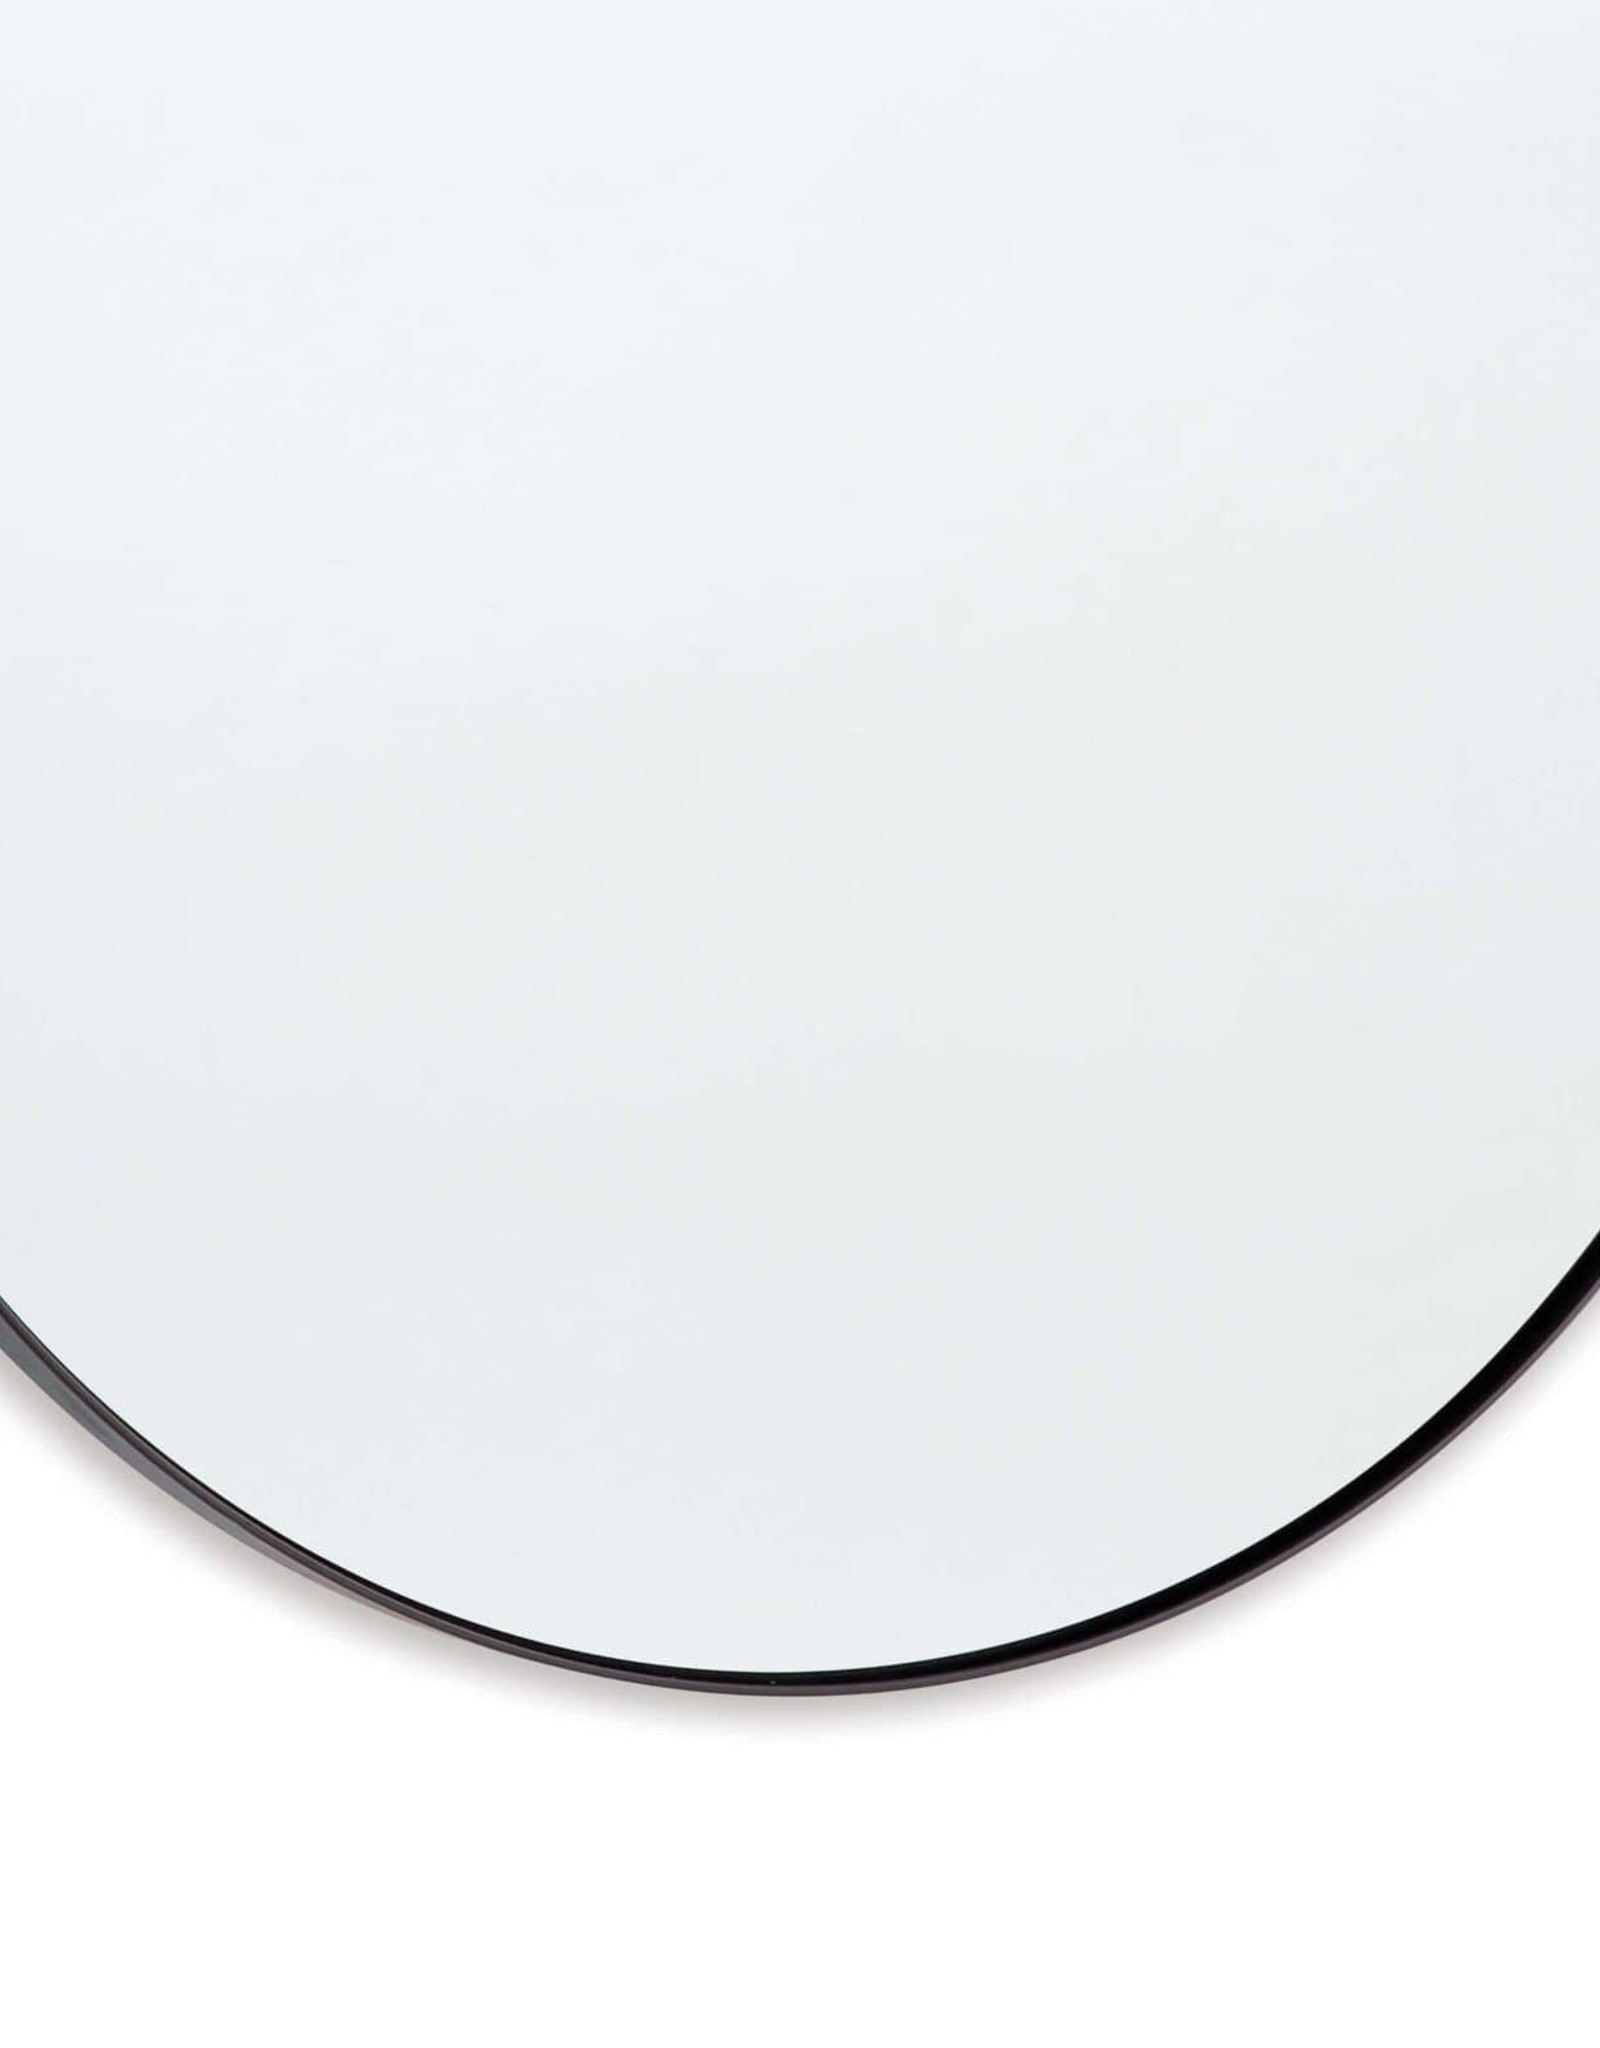 Regina Andrew Design Rowen Mirror (Steel)